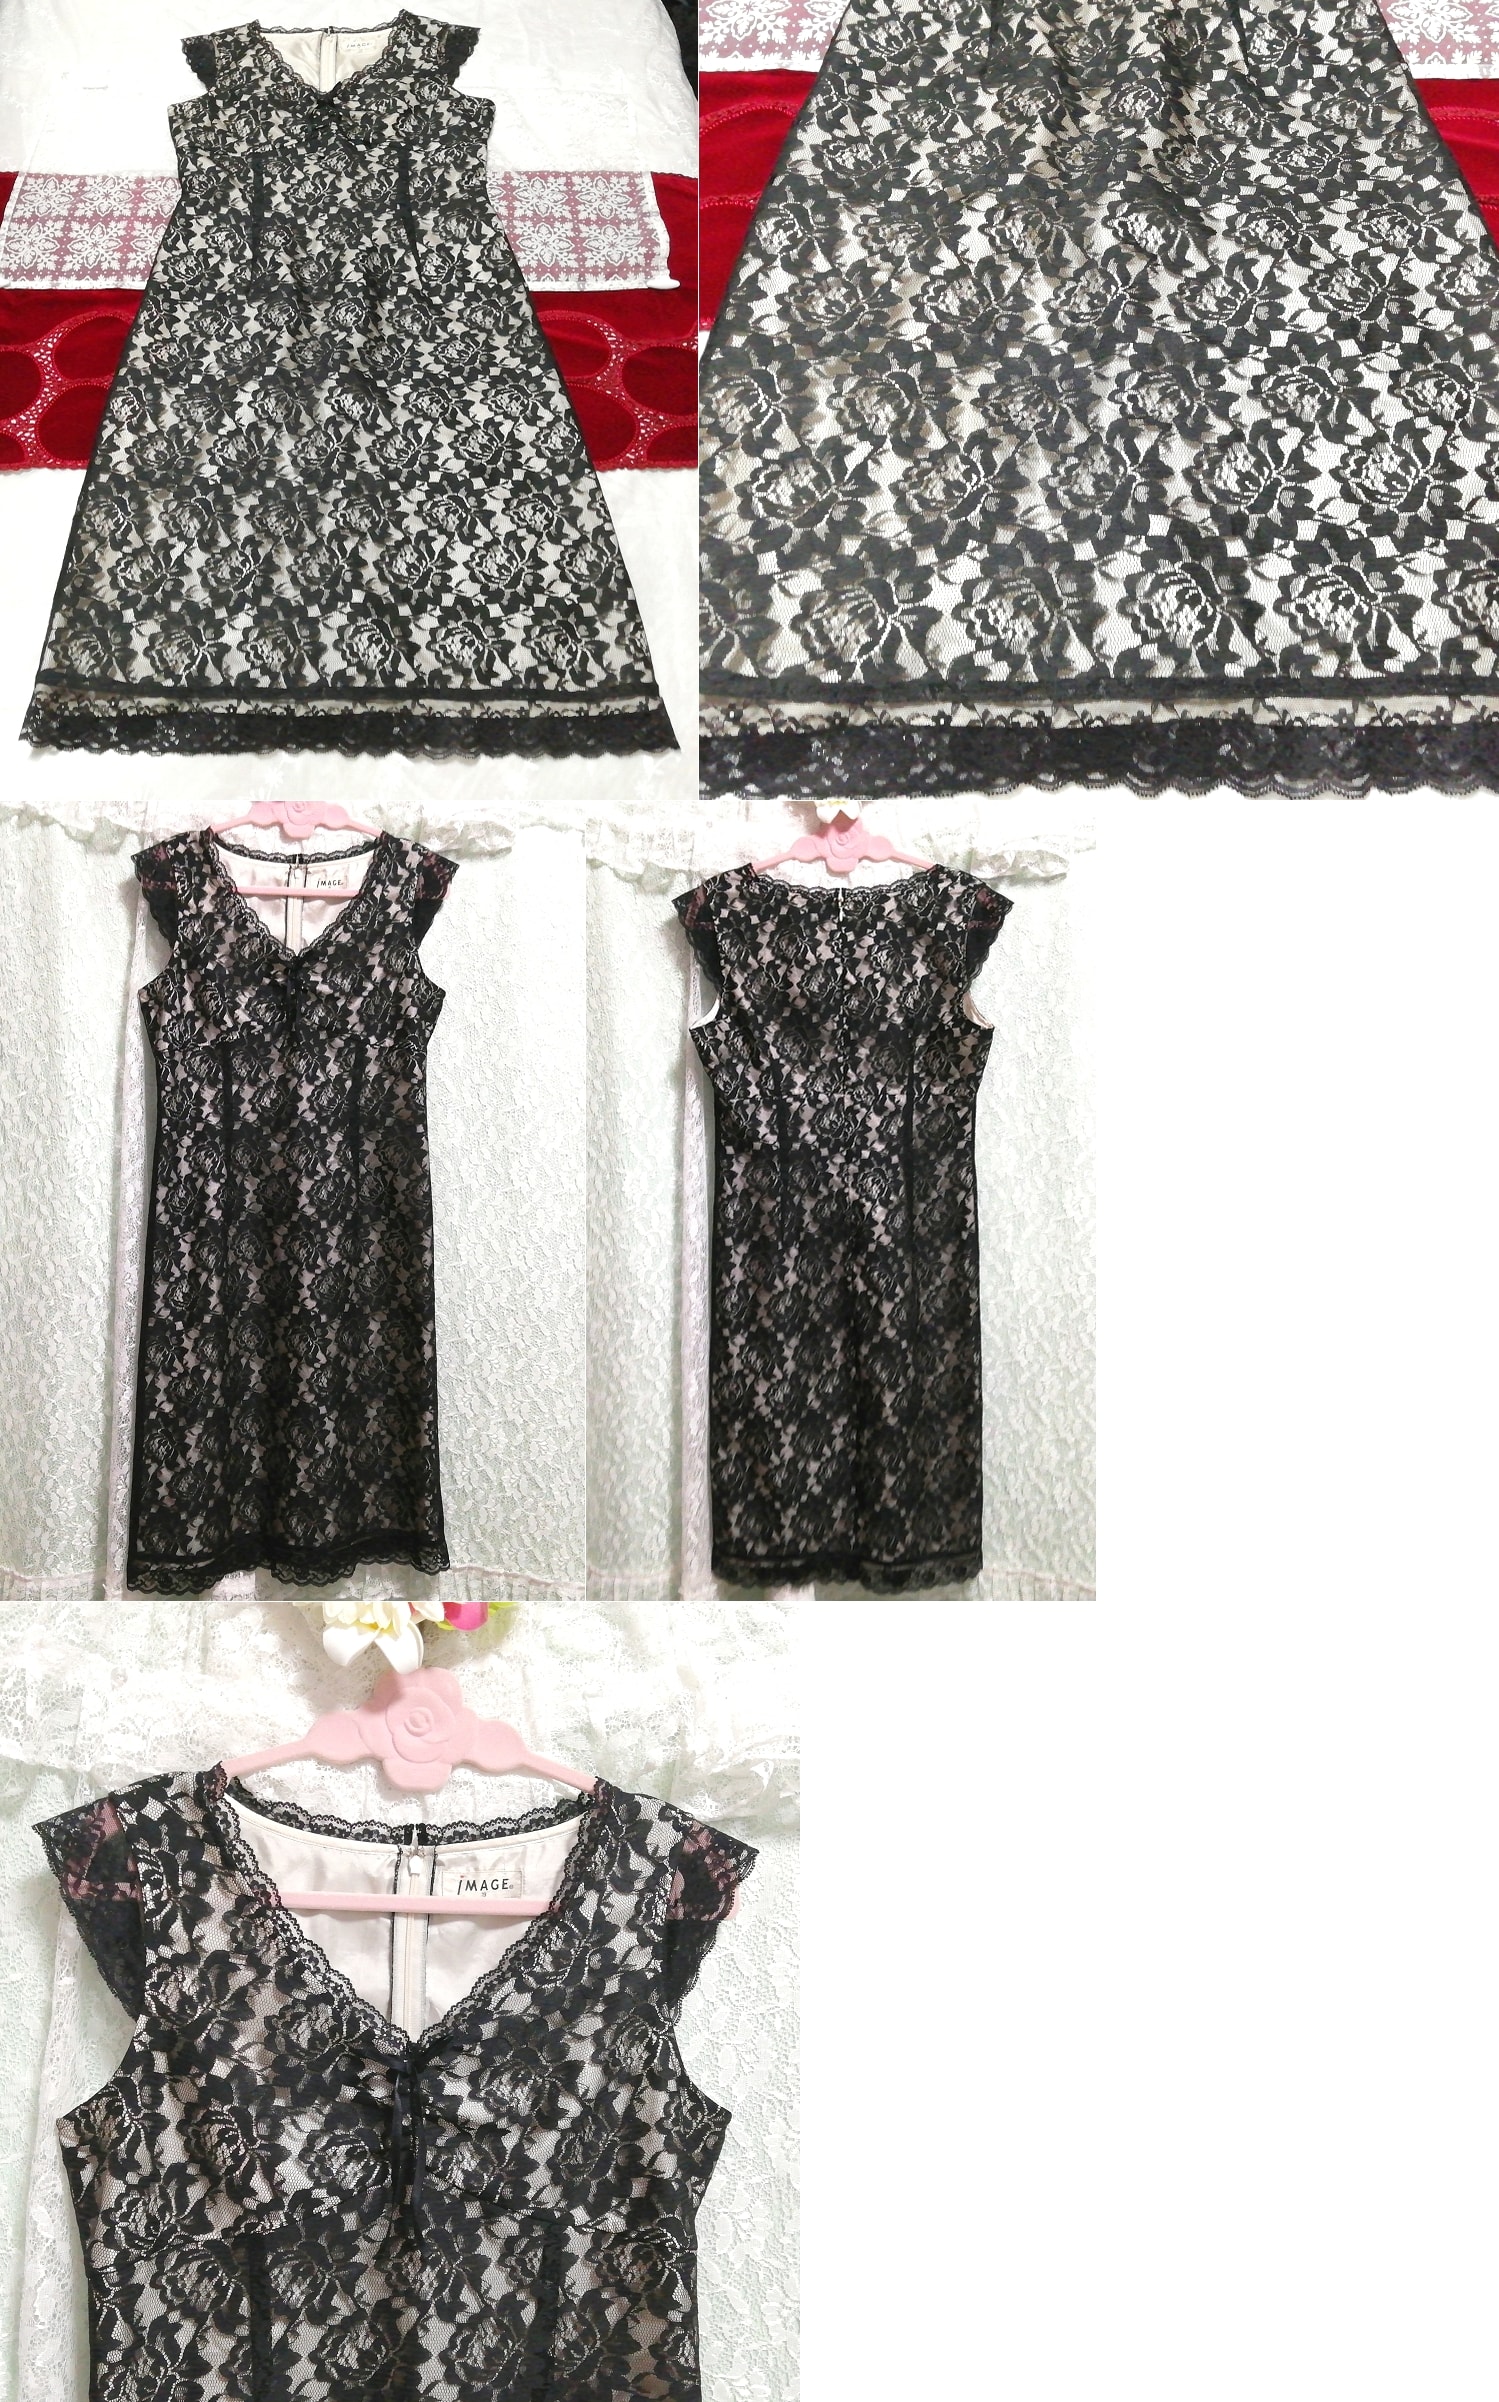 블랙 로즈 레이스 네글리제 나이트가운 민소매 원피스 드레스, 무릎길이 스커트, m 사이즈